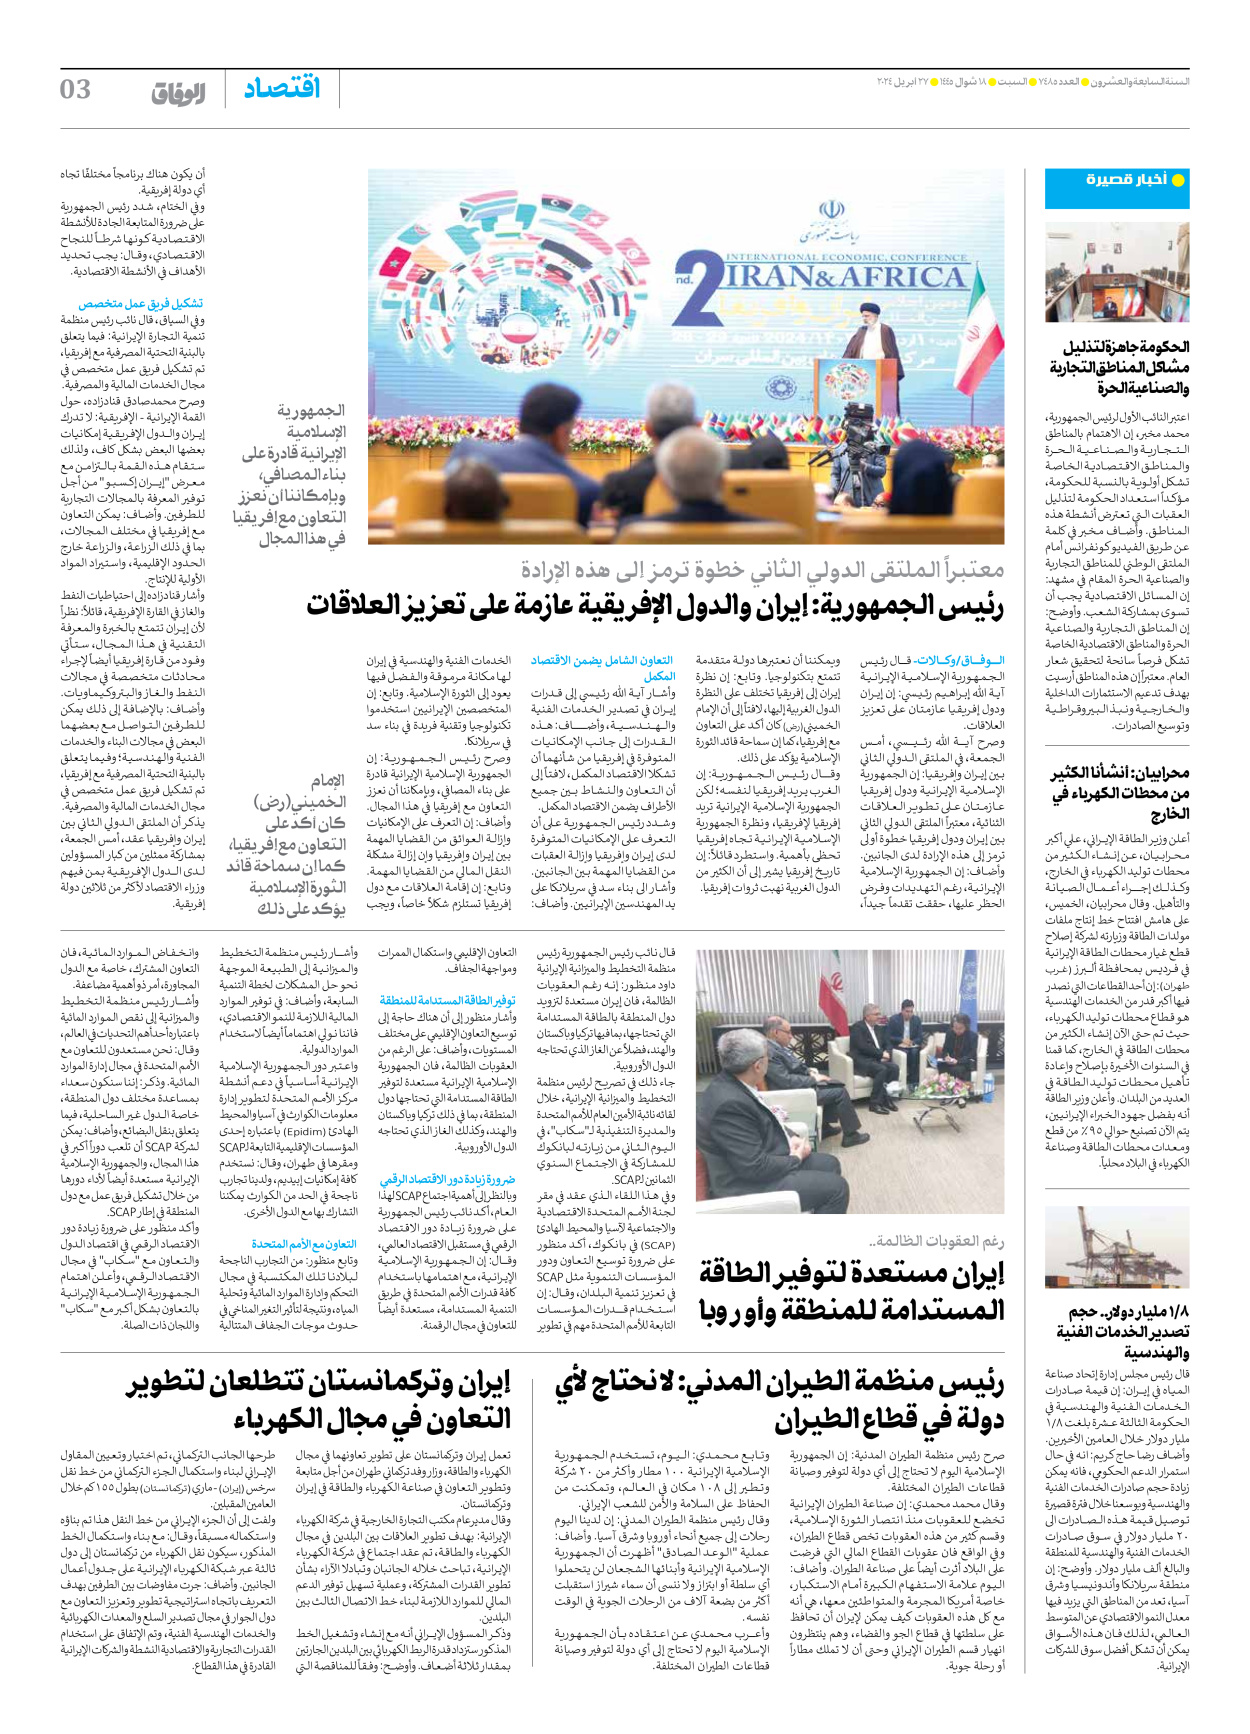 صحیفة ایران الدولیة الوفاق - العدد سبعة آلاف وأربعمائة وخمسة وثمانون - ٢٧ أبريل ٢٠٢٤ - الصفحة ۳